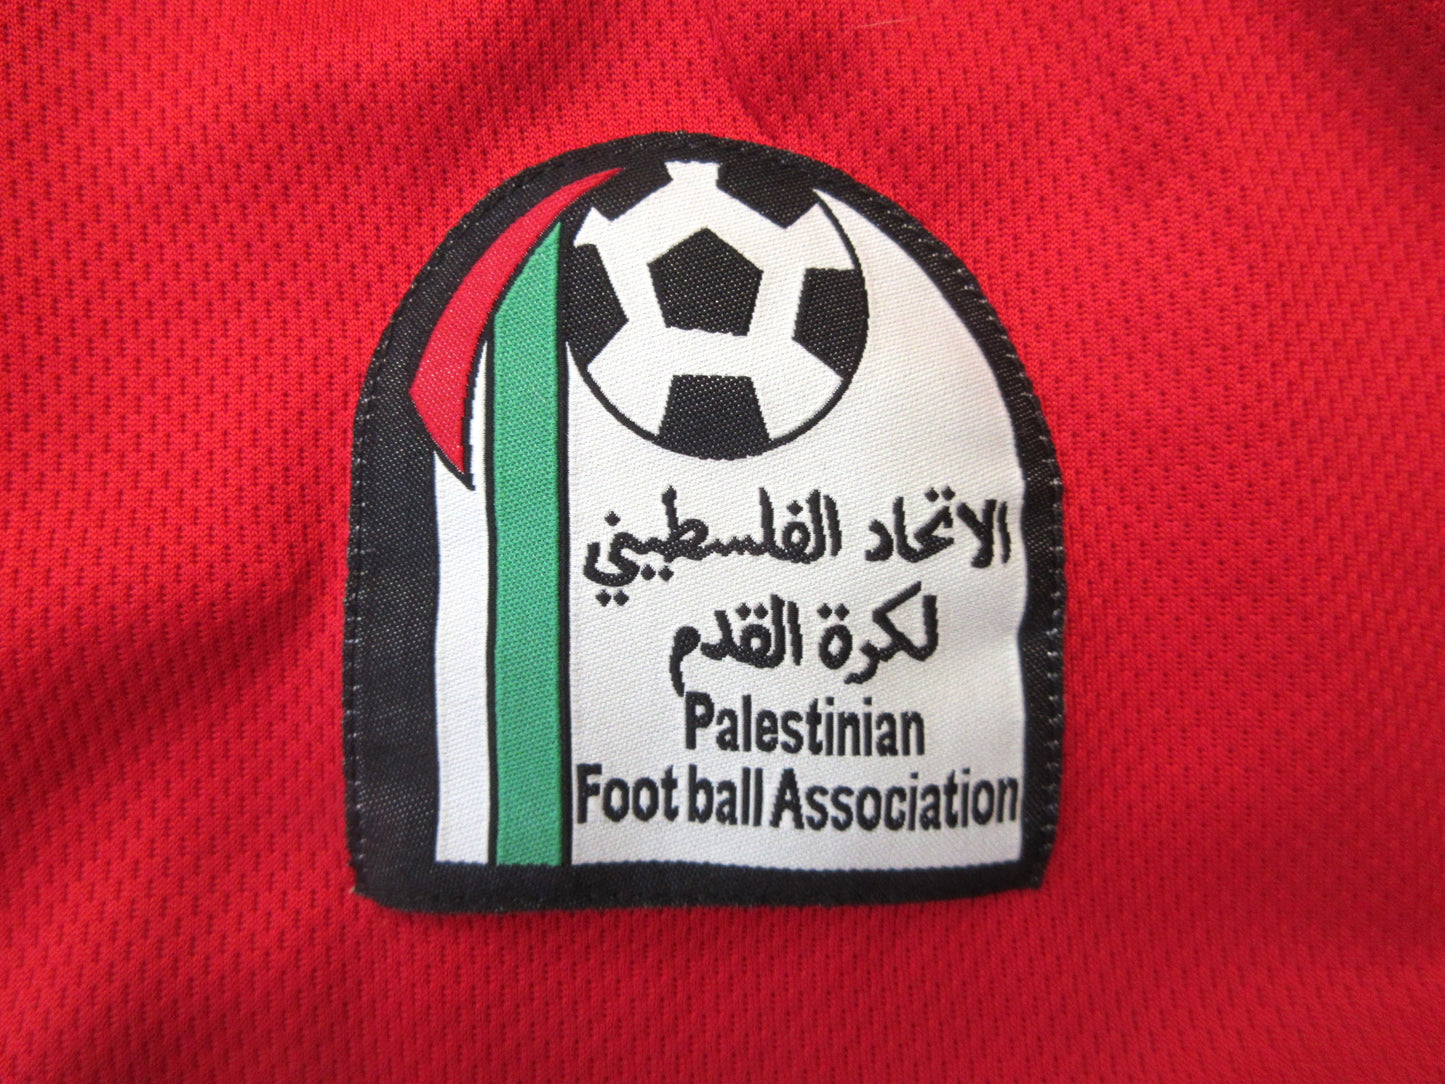 PALESTINA, football shirt.